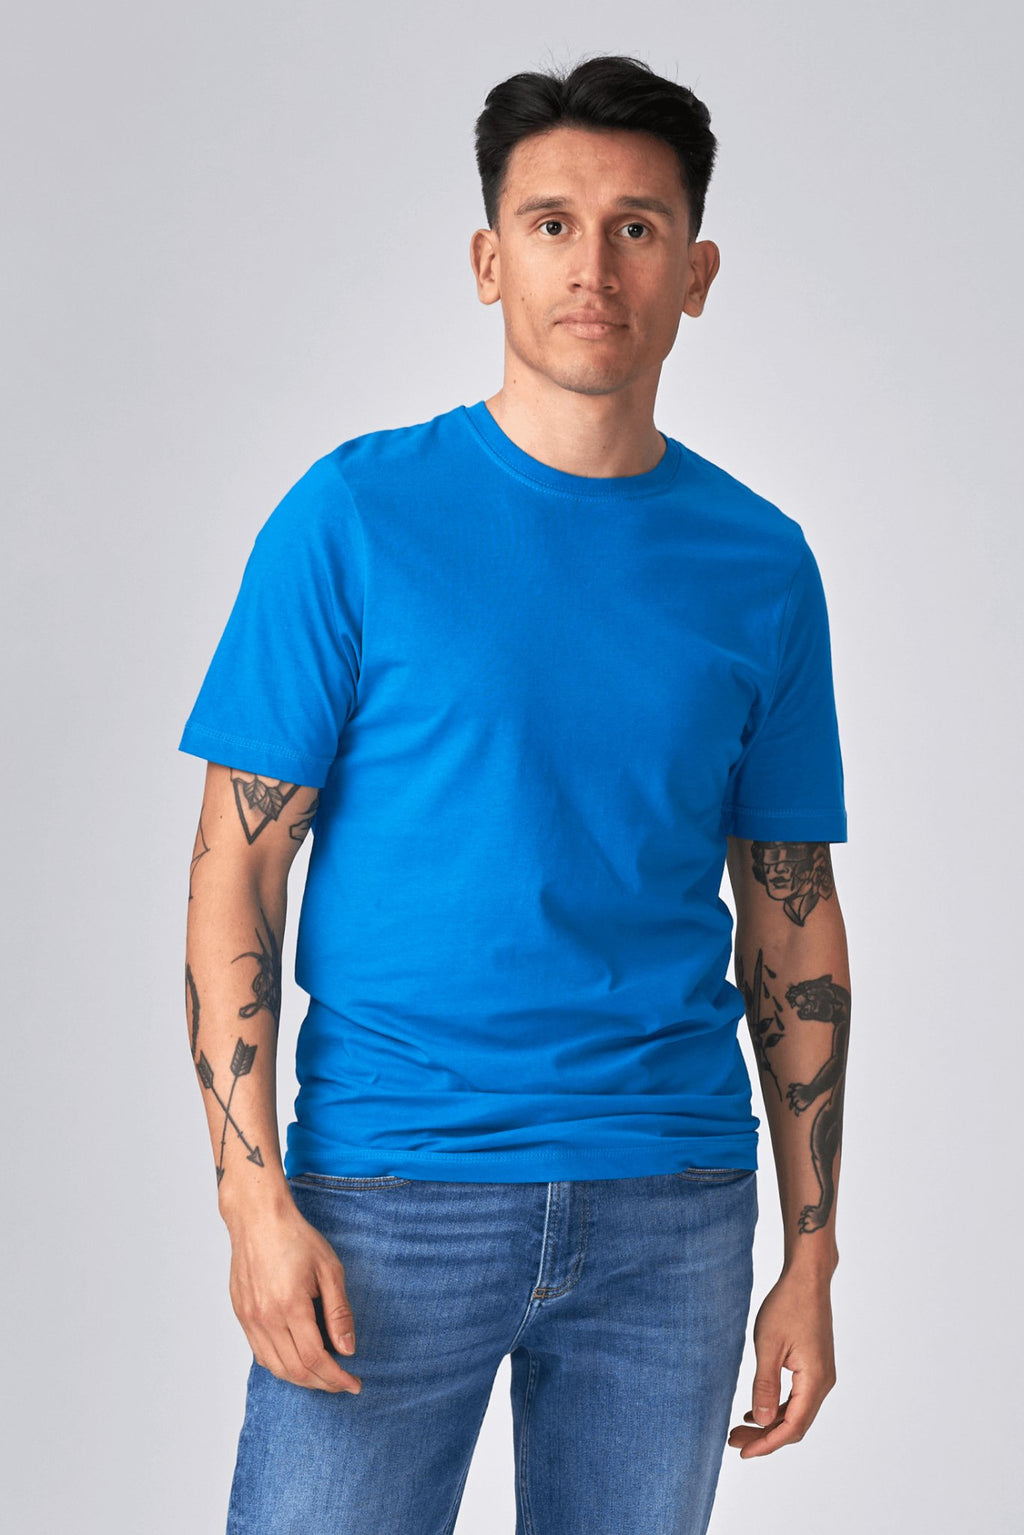 T -shirt di base organica - blu turchese